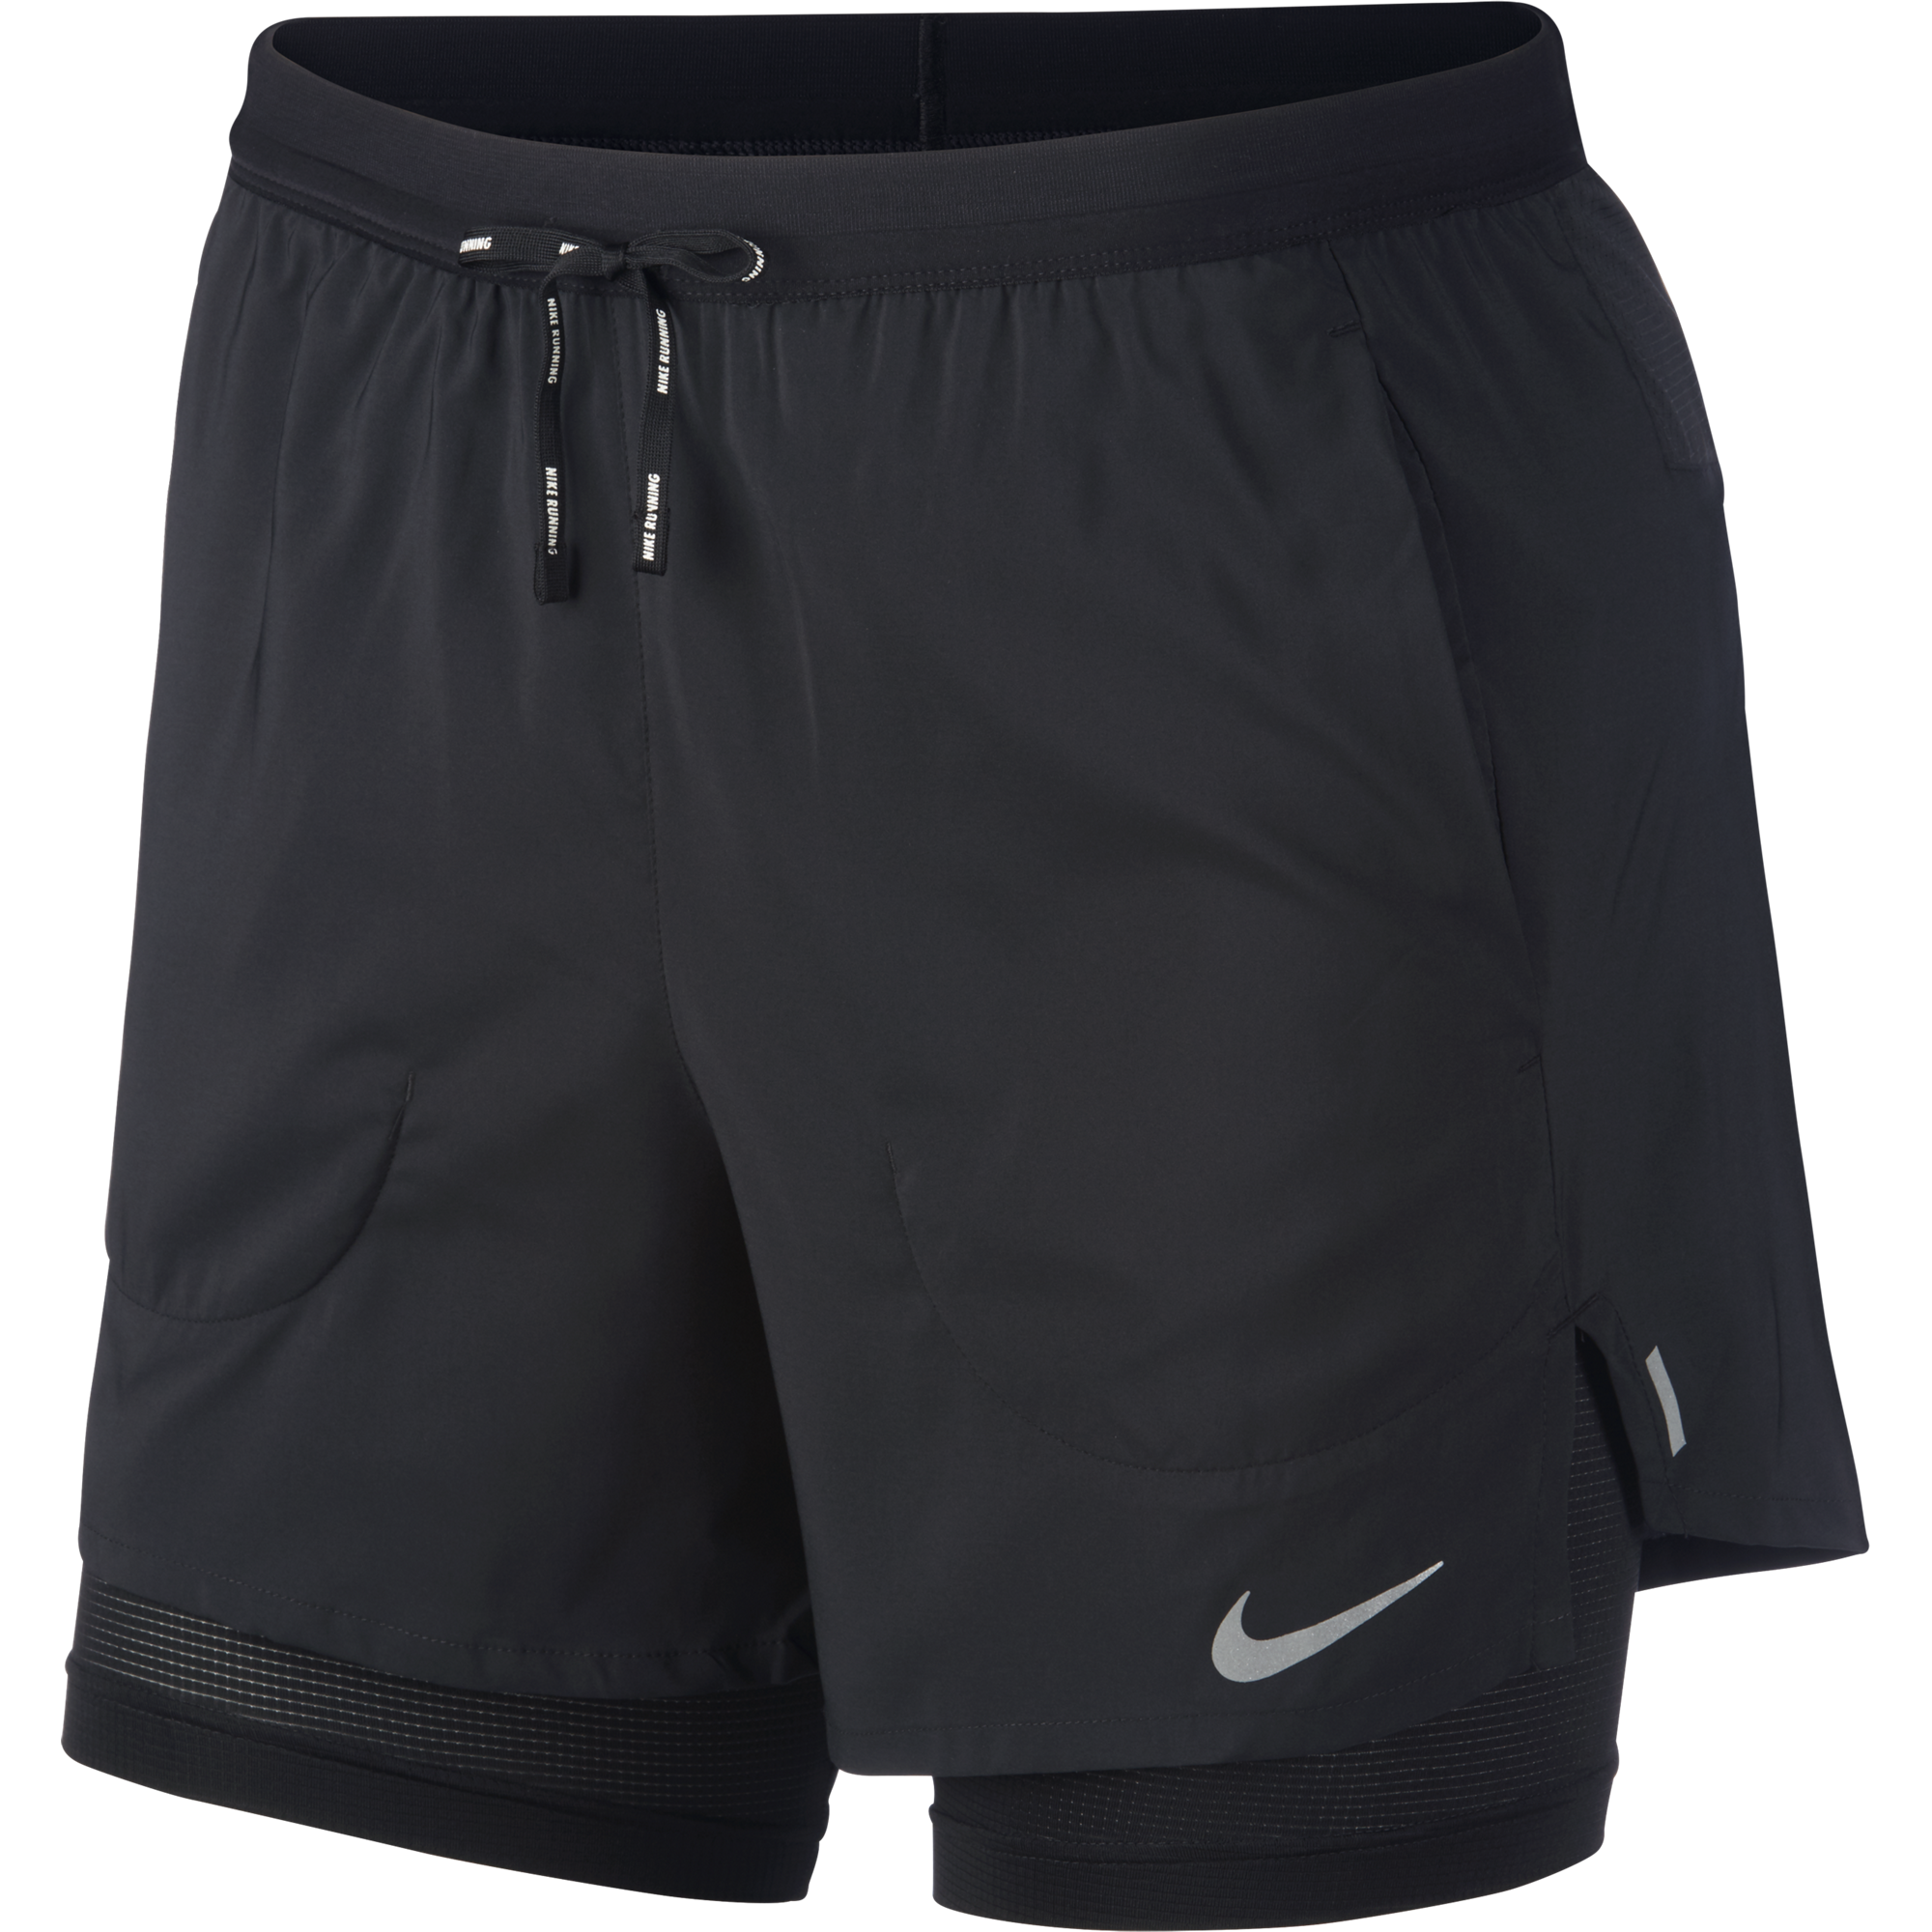 Nike Flex Stride 5 Brief Running Shorts